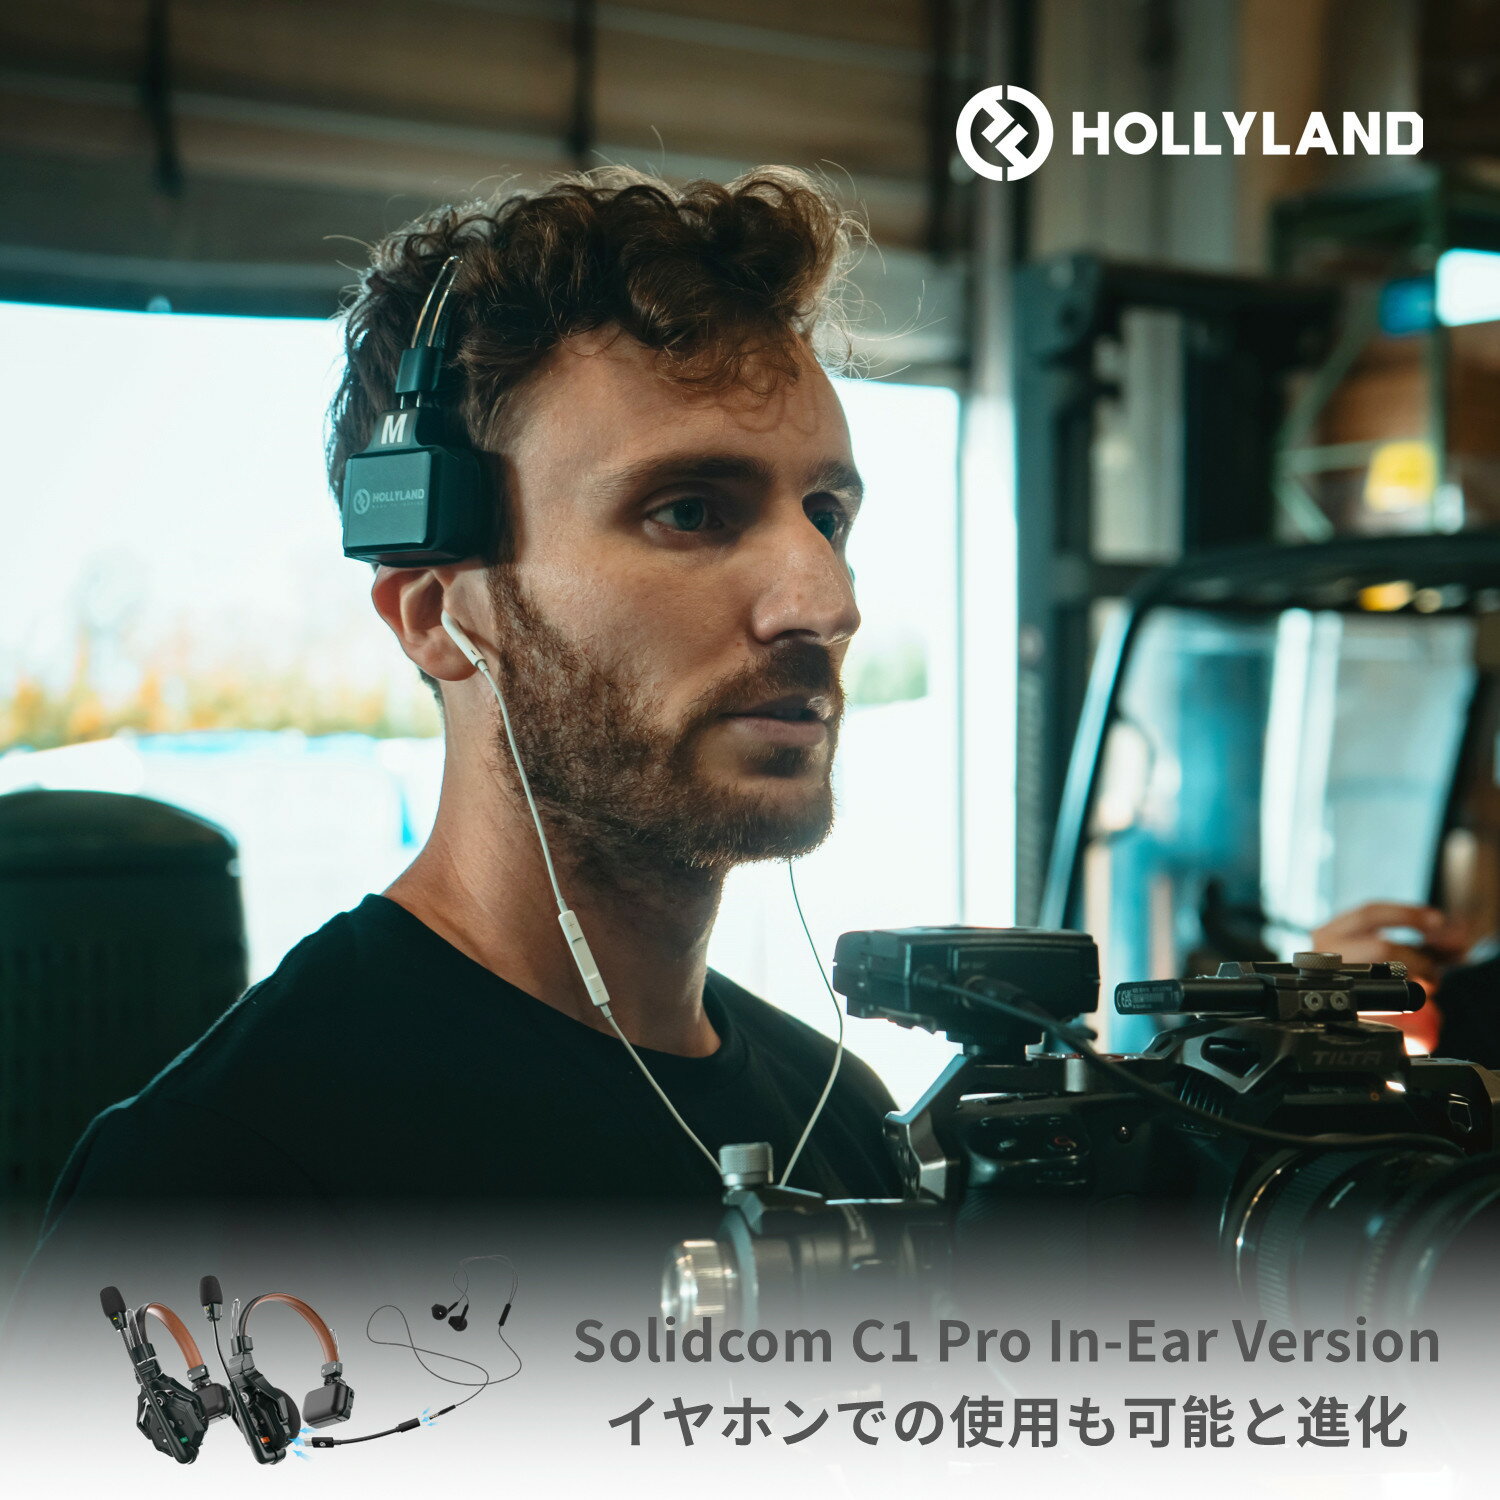 【特典付き】Hollyland Solidcom C1 Pro In-Earバージョン ワイヤレスインカム イヤホン対応版 ノイズ キャンセリング・PTT・ミュート機能付き 子機も増設可能 小型軽量ヘッドセット 設定不要 箱から出してすぐに使える同時通話システム